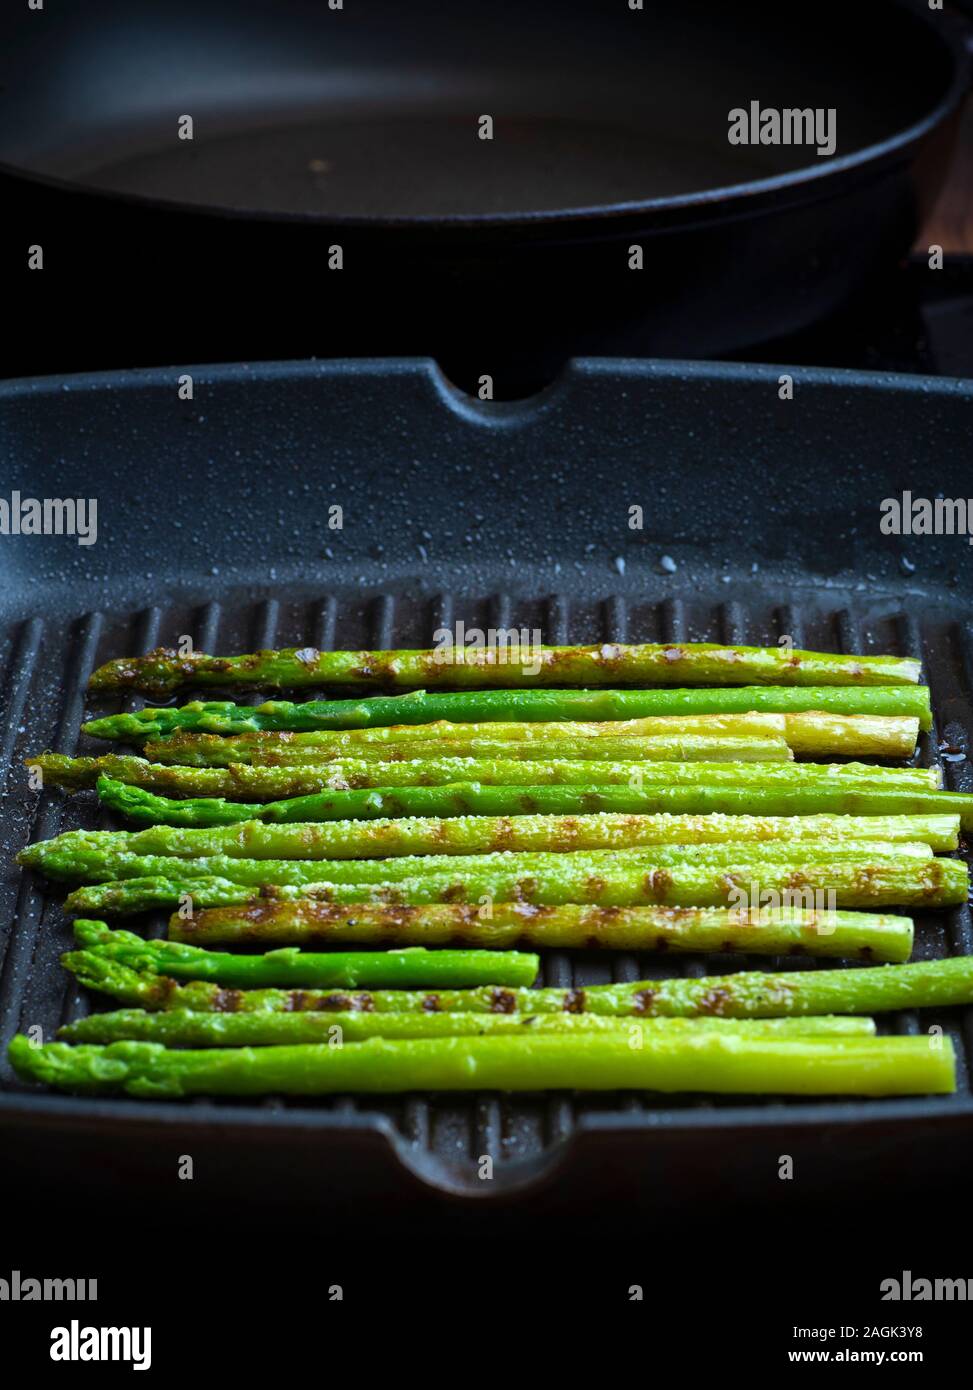 Asperges grillées. Asperges sautées dans une poêle. Légumes grillés au barbecue. Veg concept. Banque D'Images